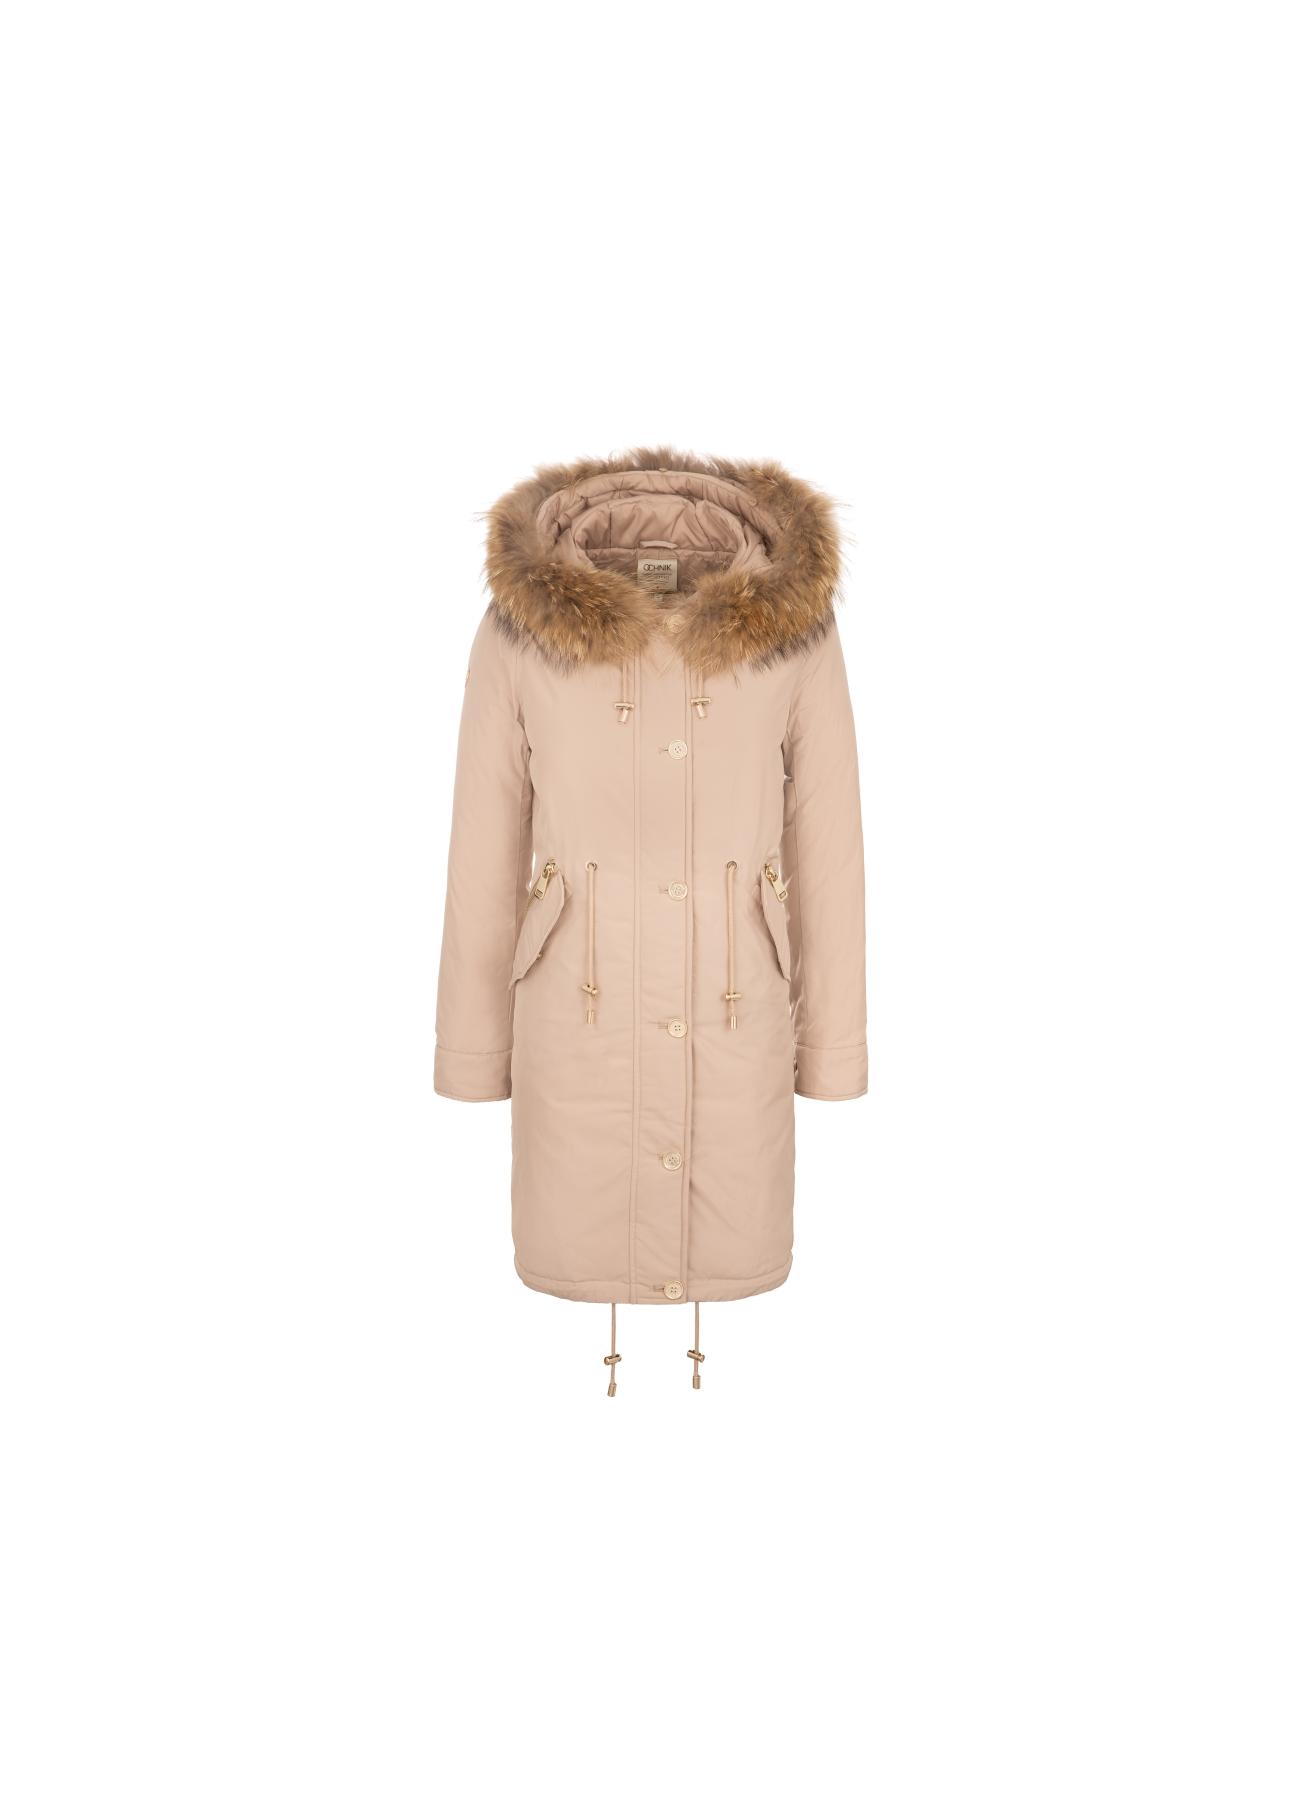 Beżowa zimowa kurtka damska z kapturem KURDT-0133-80(Z18)